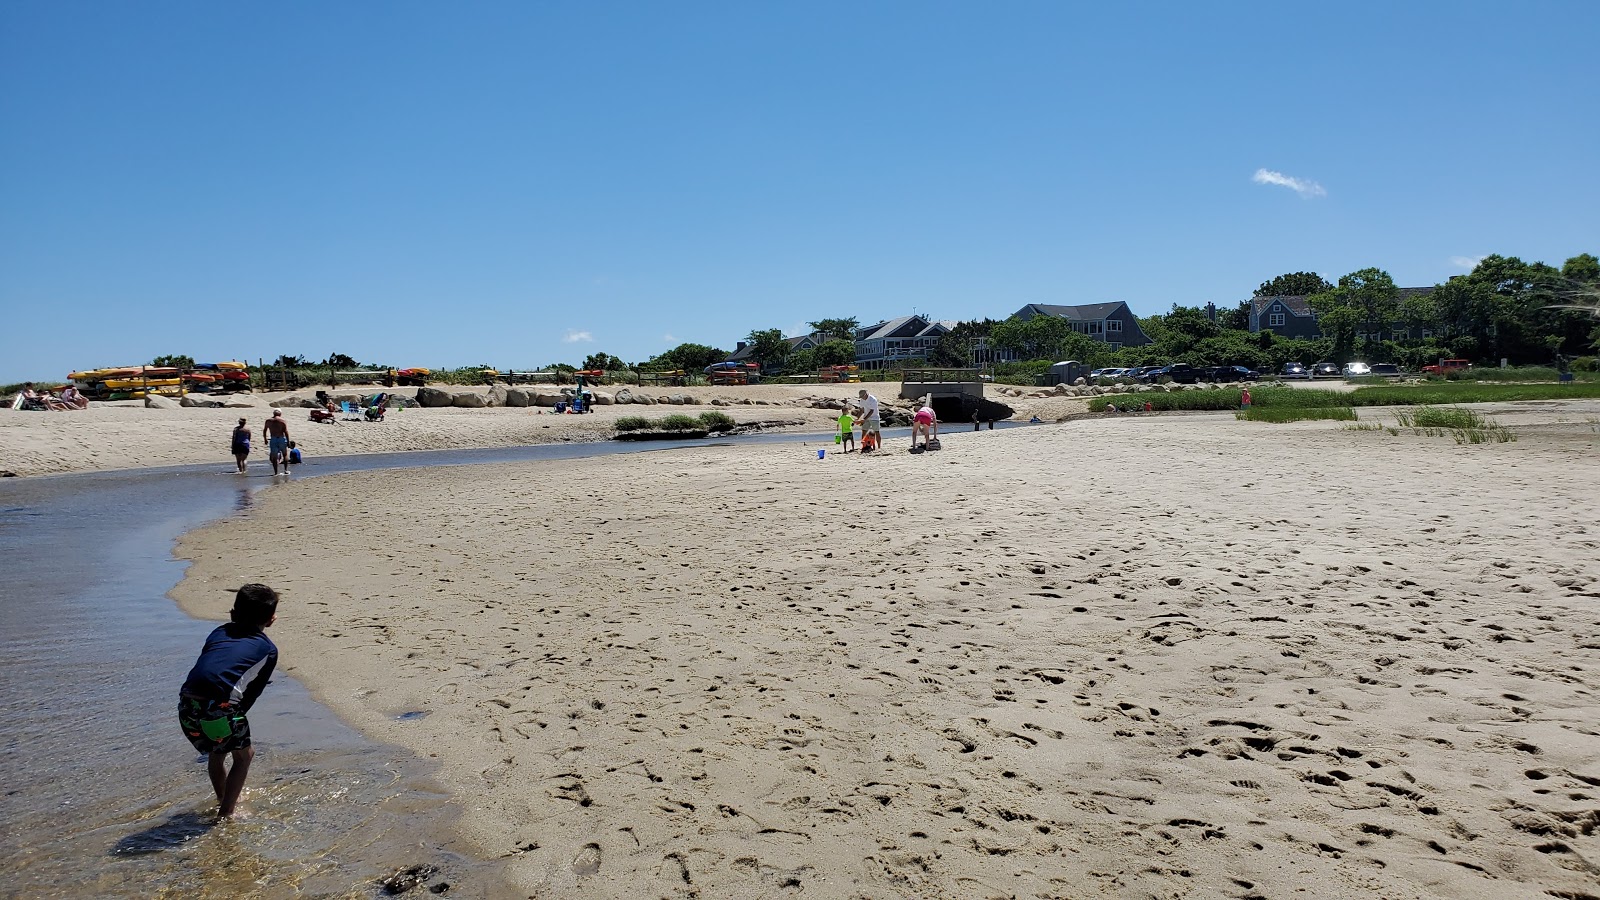 Fotografie cu Mant's Landing beach cu plajă spațioasă